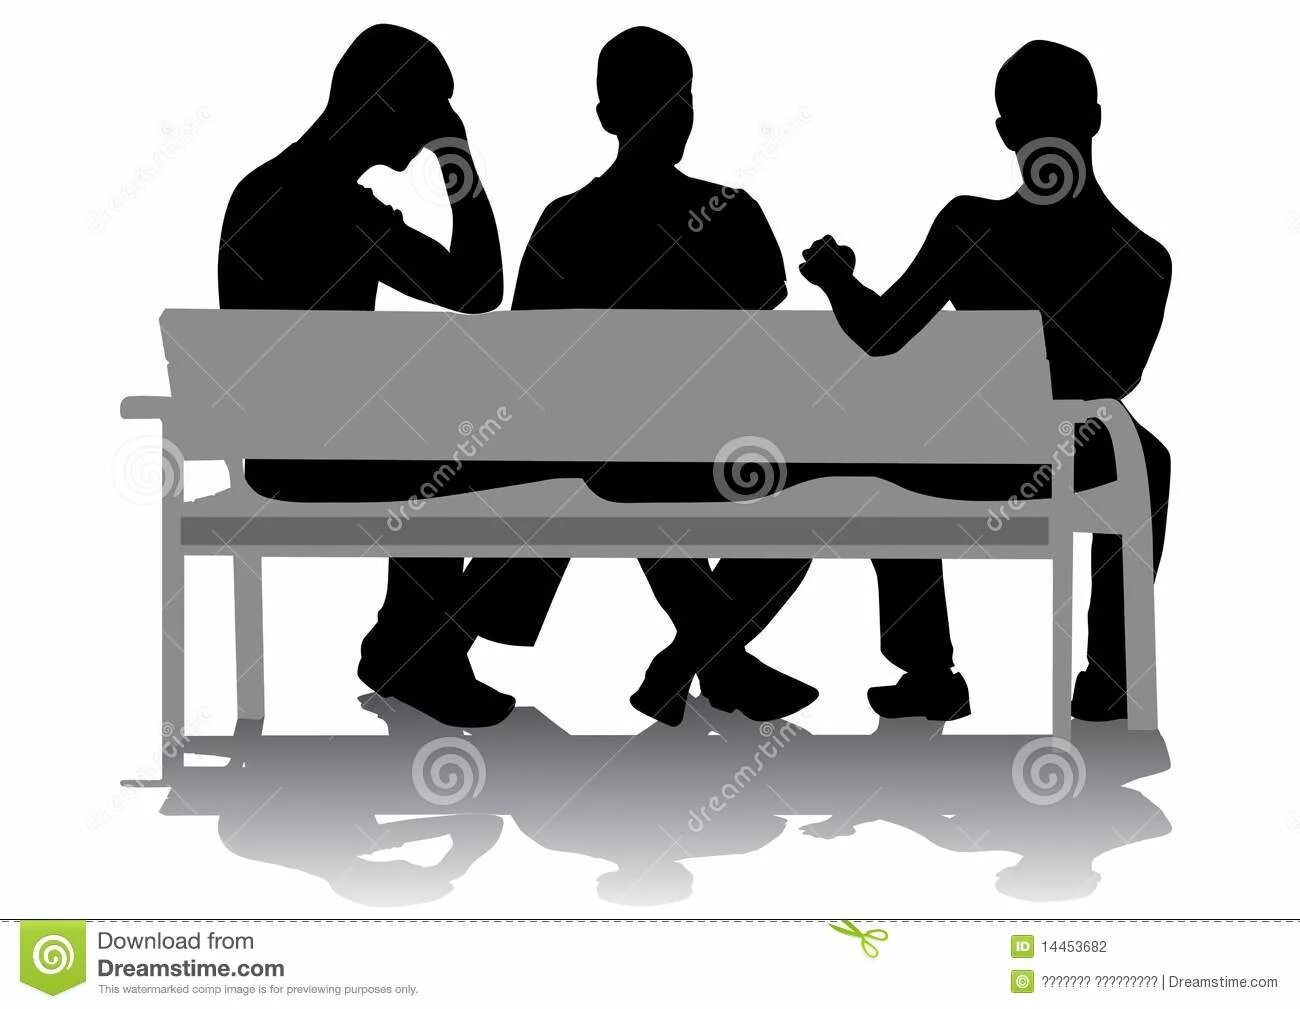 Векторные люди на скамейках. Молодежь на скамейке. Человек на скамейке силуэт. Три мужских силуэта на скамье.